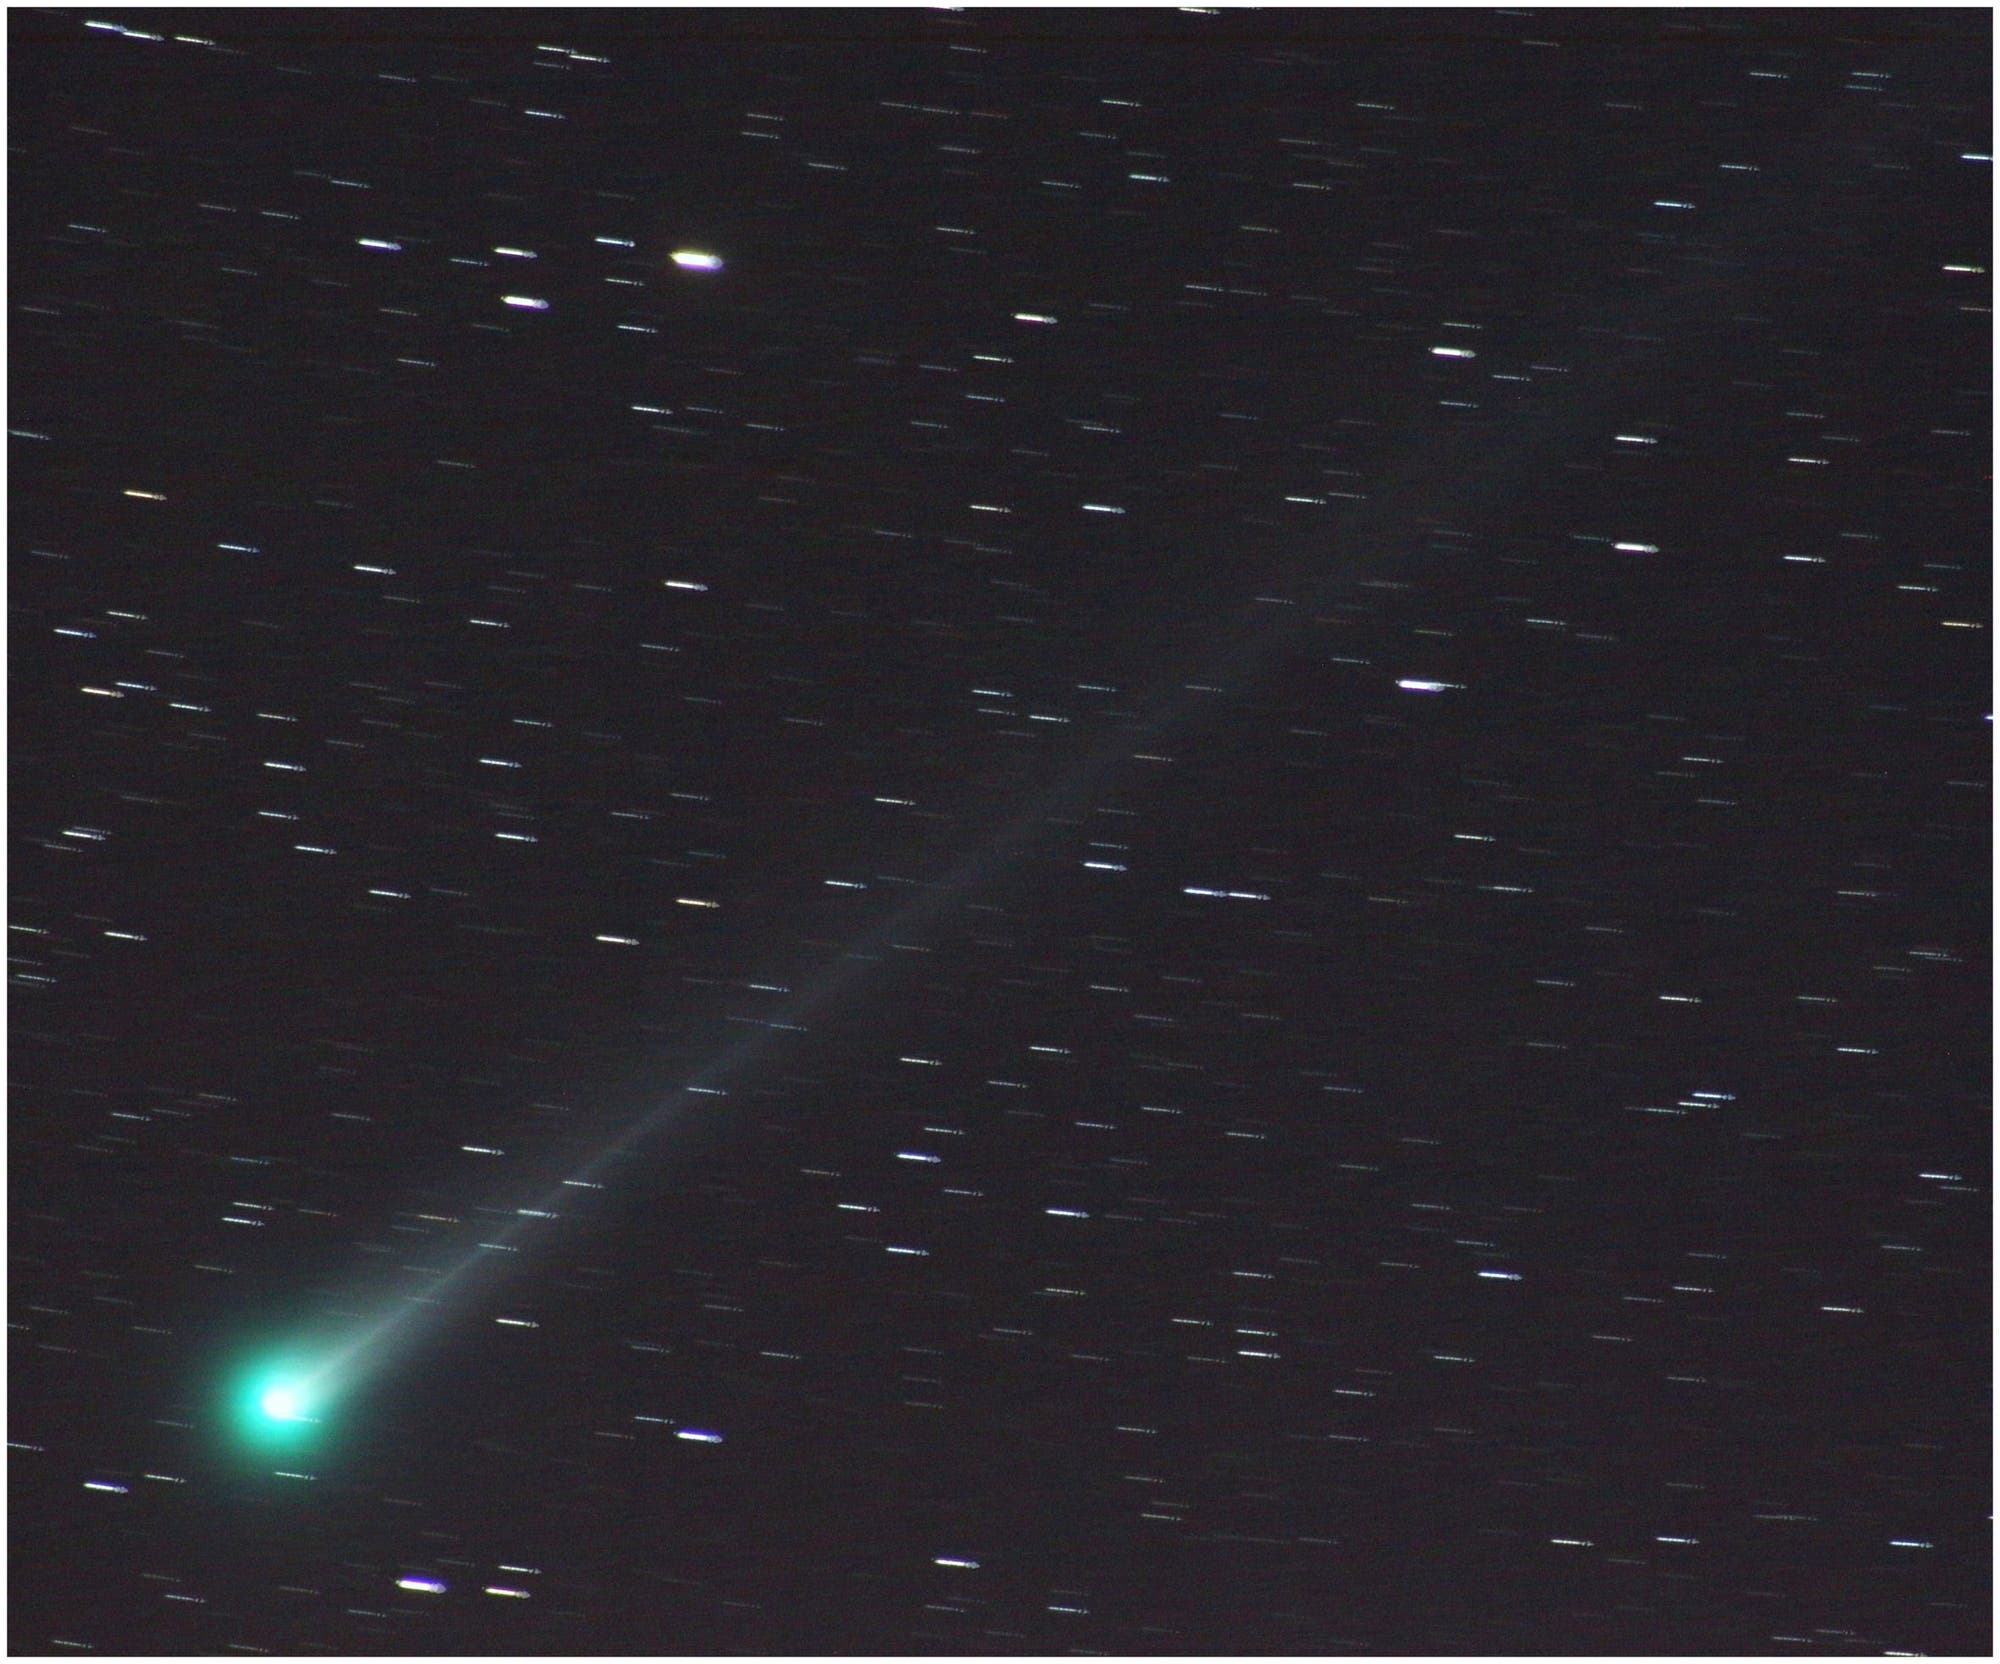 Komet C/2013 R1 (Lovejoy) am 28. November 2013